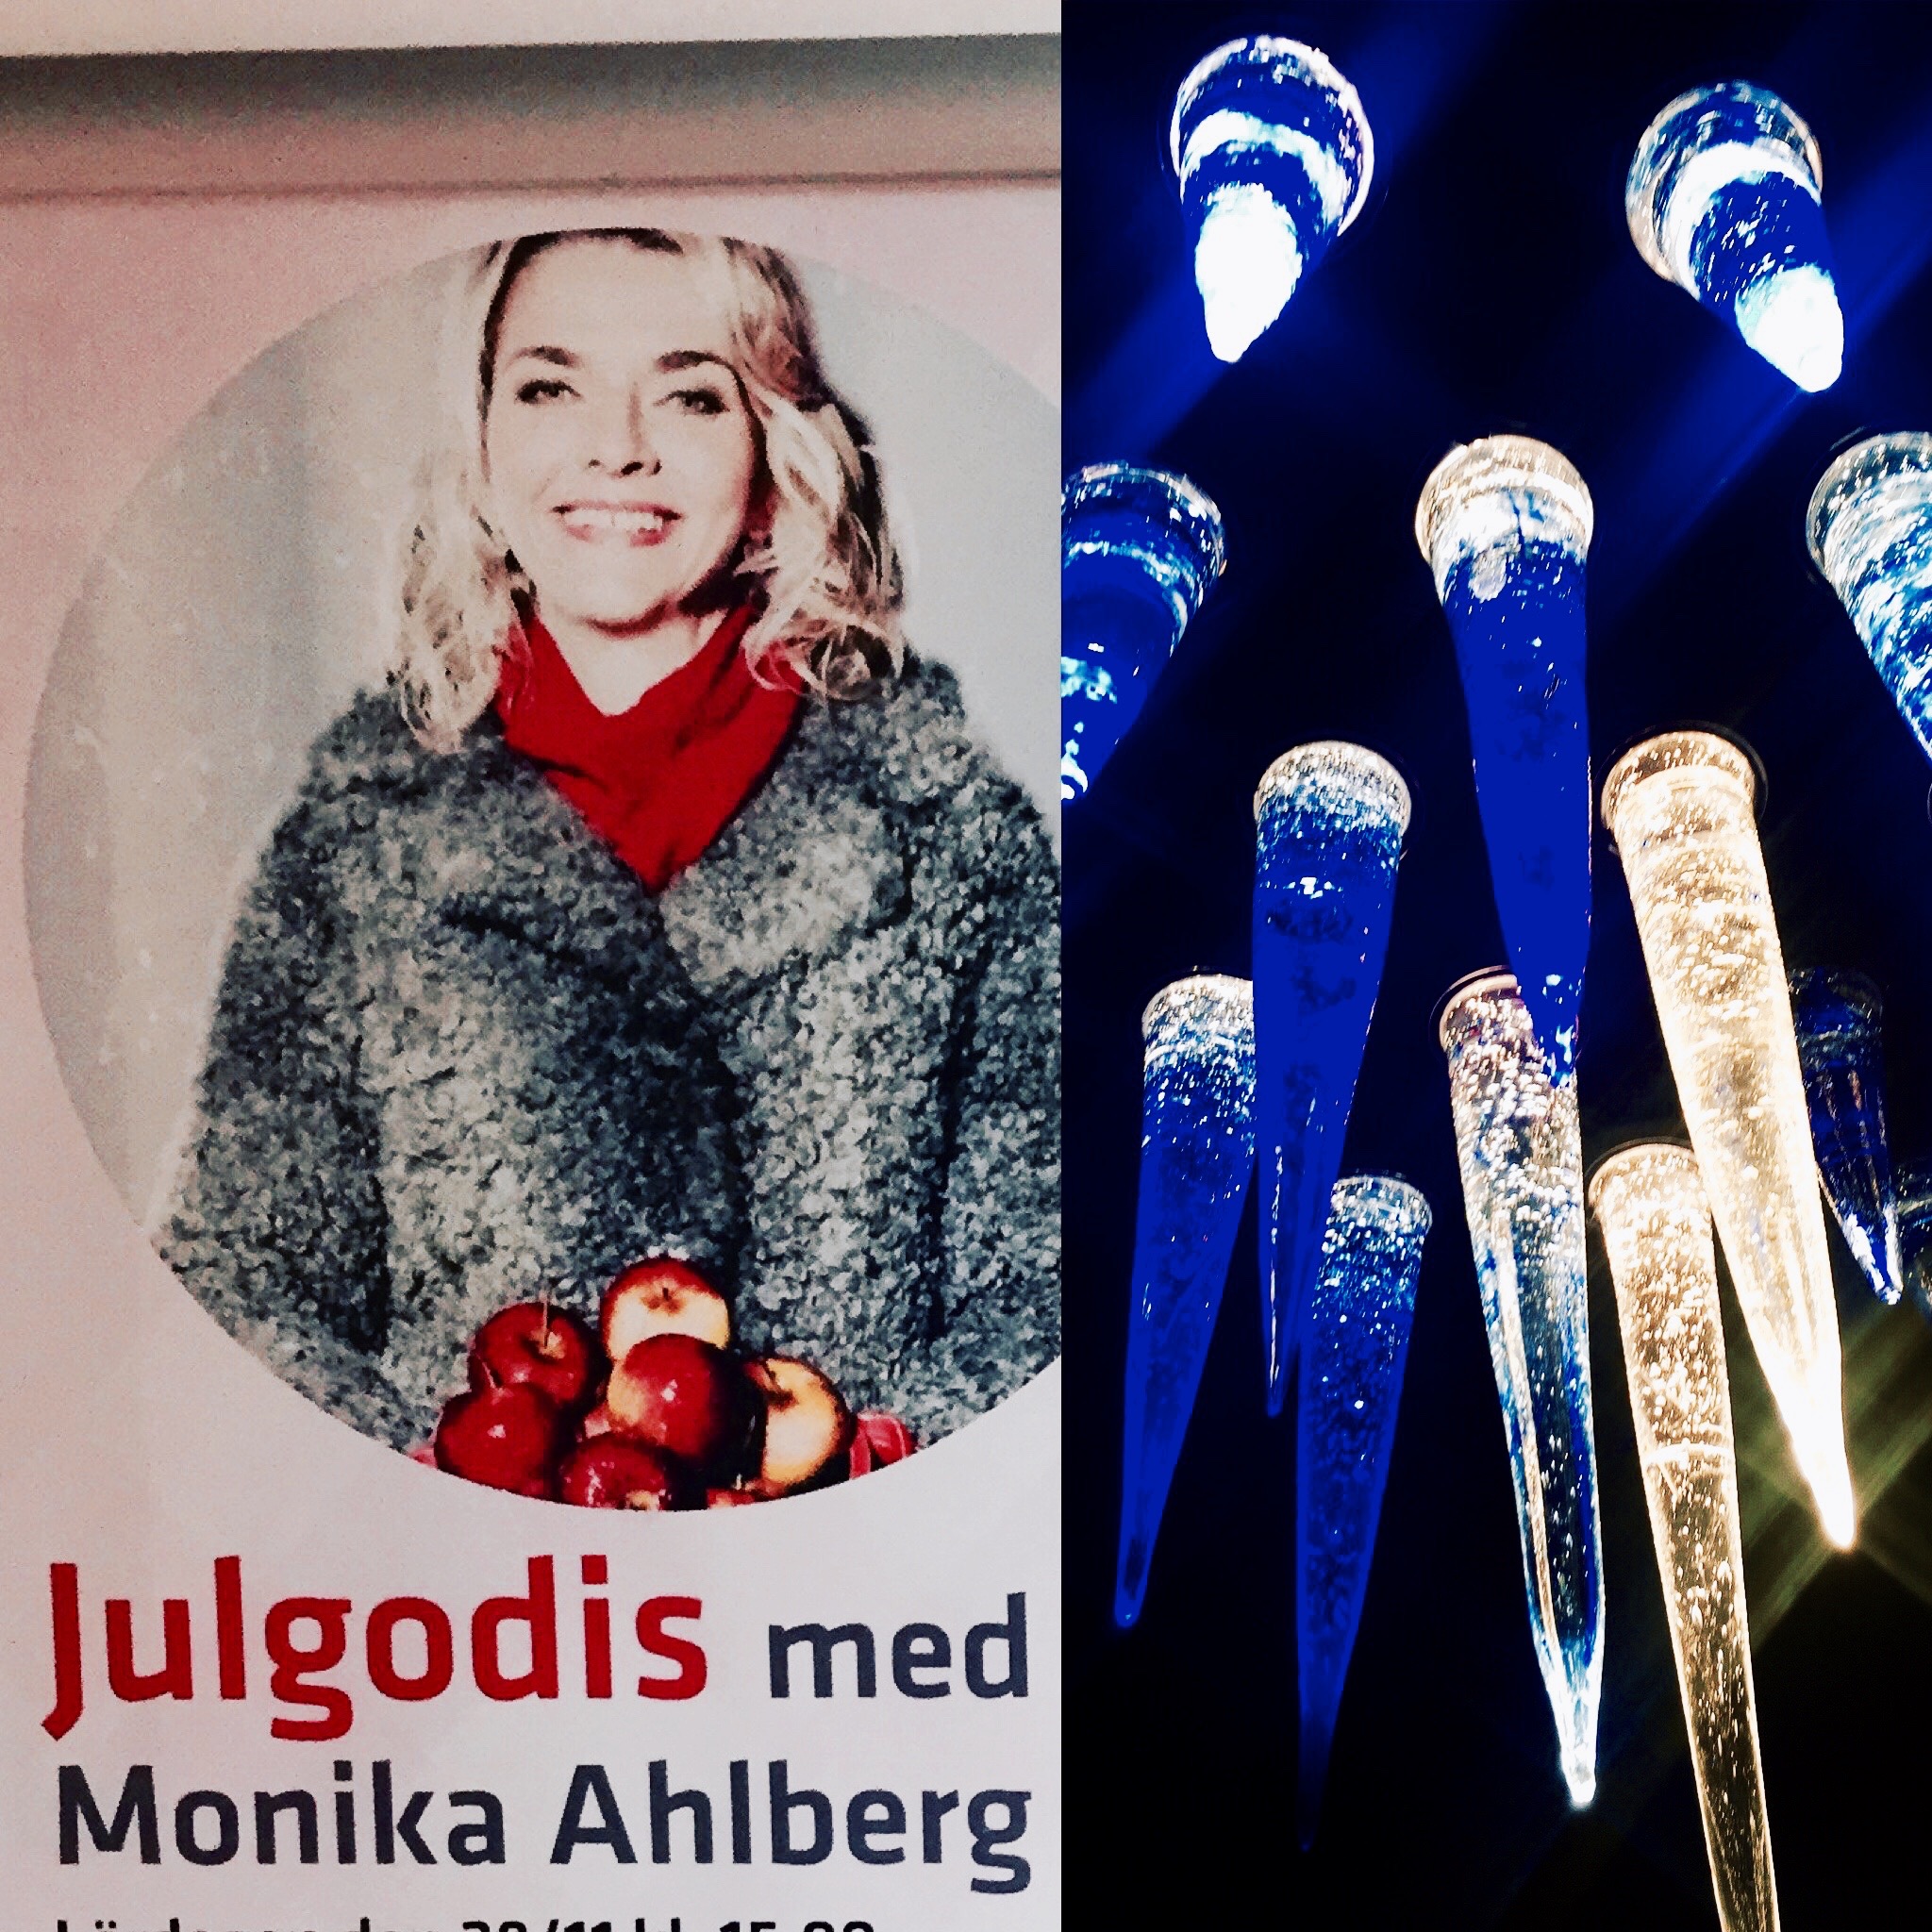 Monika Ahlberg Kosta